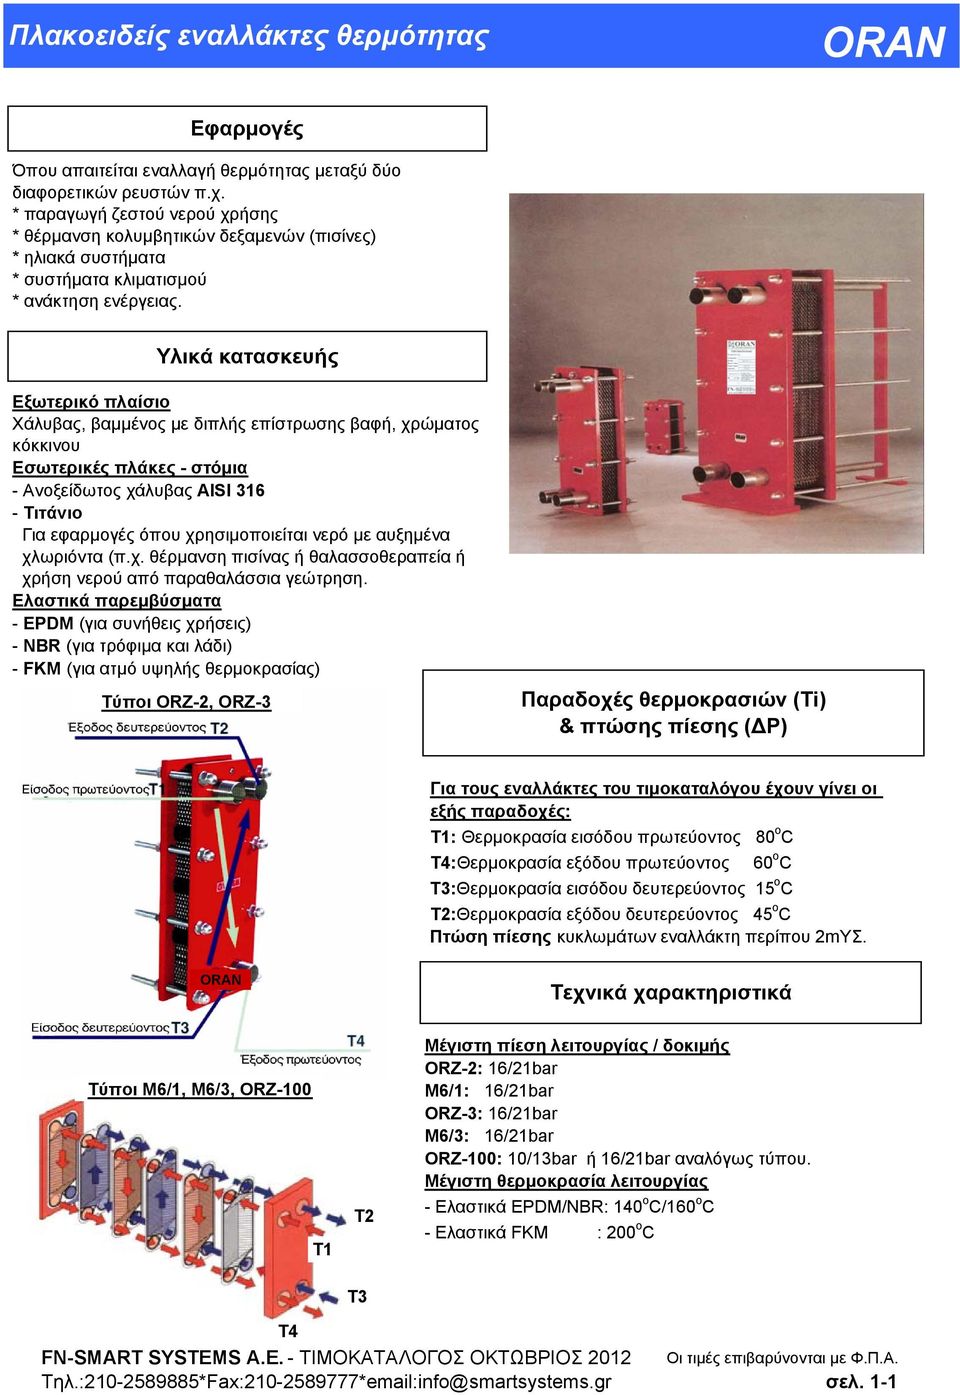 Υλικά κατασκευής Εξωτερικό πλαίσιο Χάλυβας, βαμμένος με διπλής επίστρωσης βαφή, χρώματος κόκκινου Εσωτερικές πλάκες - στόμια - Ανοξείδωτος χάλυβας AISI 316 - Τιτάνιο Για εφαρμογές όπου